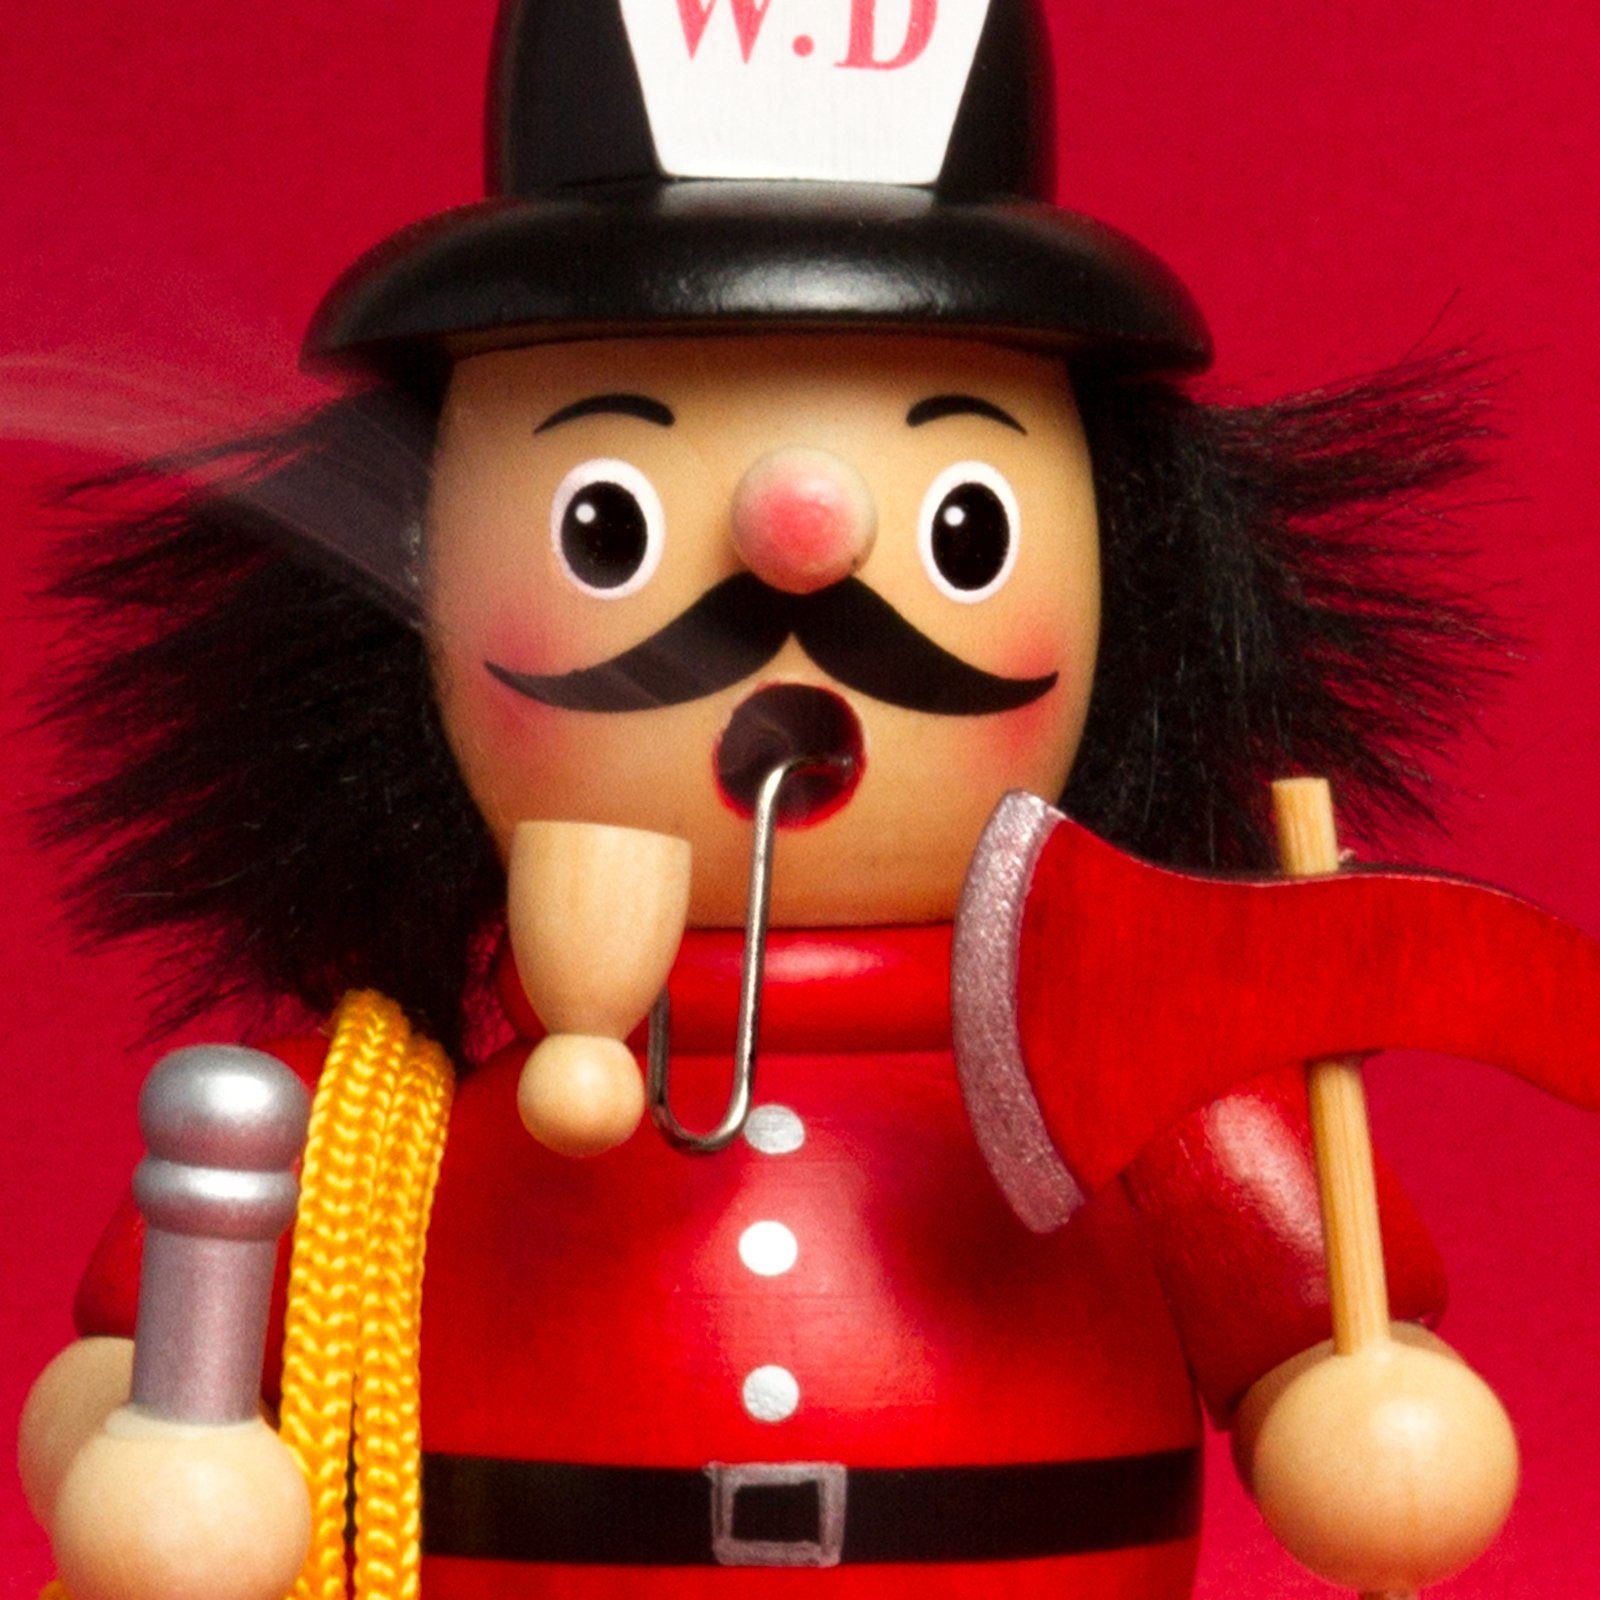 rot RM-B - Motive Holz Feuerwehrmann aus Weihnachtsfigur B08 verschiedene SIKORA Räuchermännchen